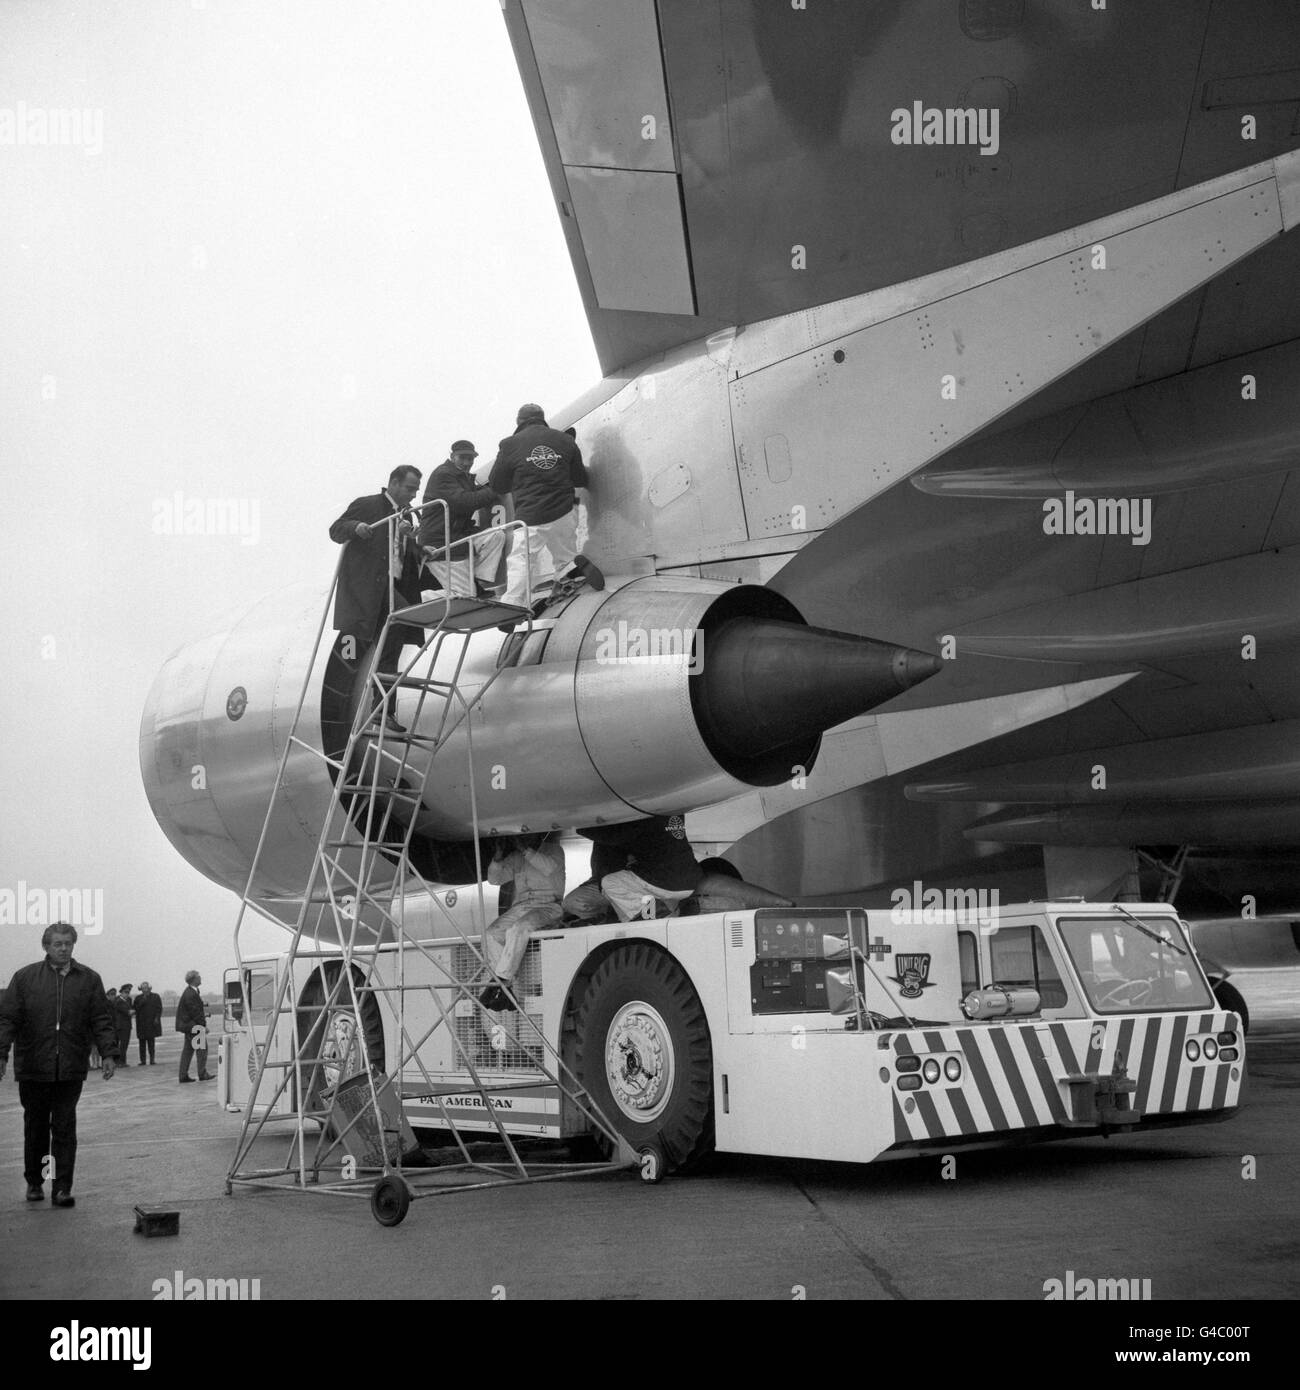 Gli uomini sono mostrati lavorando su uno dei motori portuali del gigante Boeing 747 jumbo jet che è stato il primo del suo genere a atterrare all'aeroporto di Heathrow. L'aereo è arrivato con tre ore di ritardo a causa di un cambio di motore e di un "ingorgo" all'aeroporto John F. Kennedy di New York. I passeggeri del volo Pan American erano il personale delle compagnie aeree e alcune famiglie e funzionari dell'American Federal Aviation Agency. Foto Stock